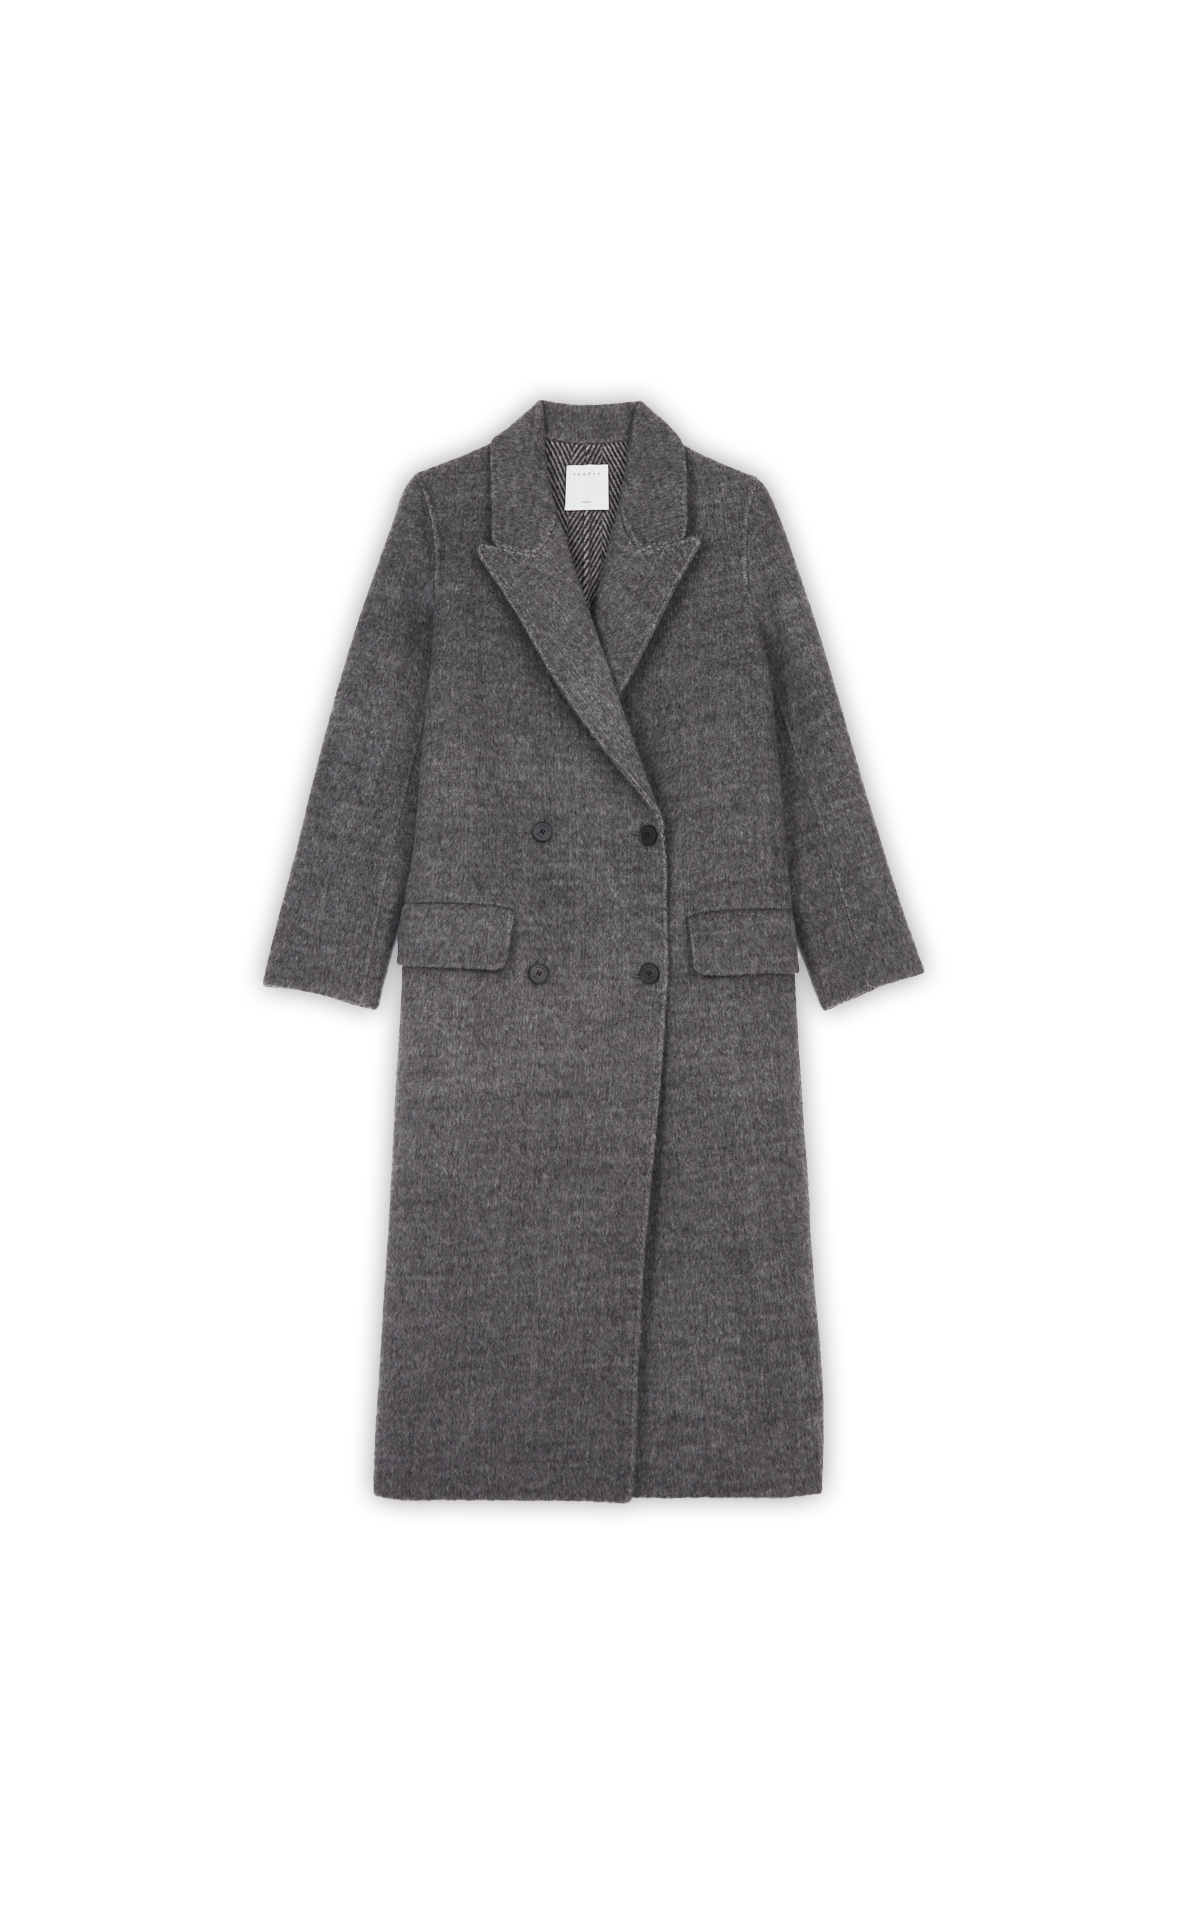 Manteau long gris texture fourrure* 